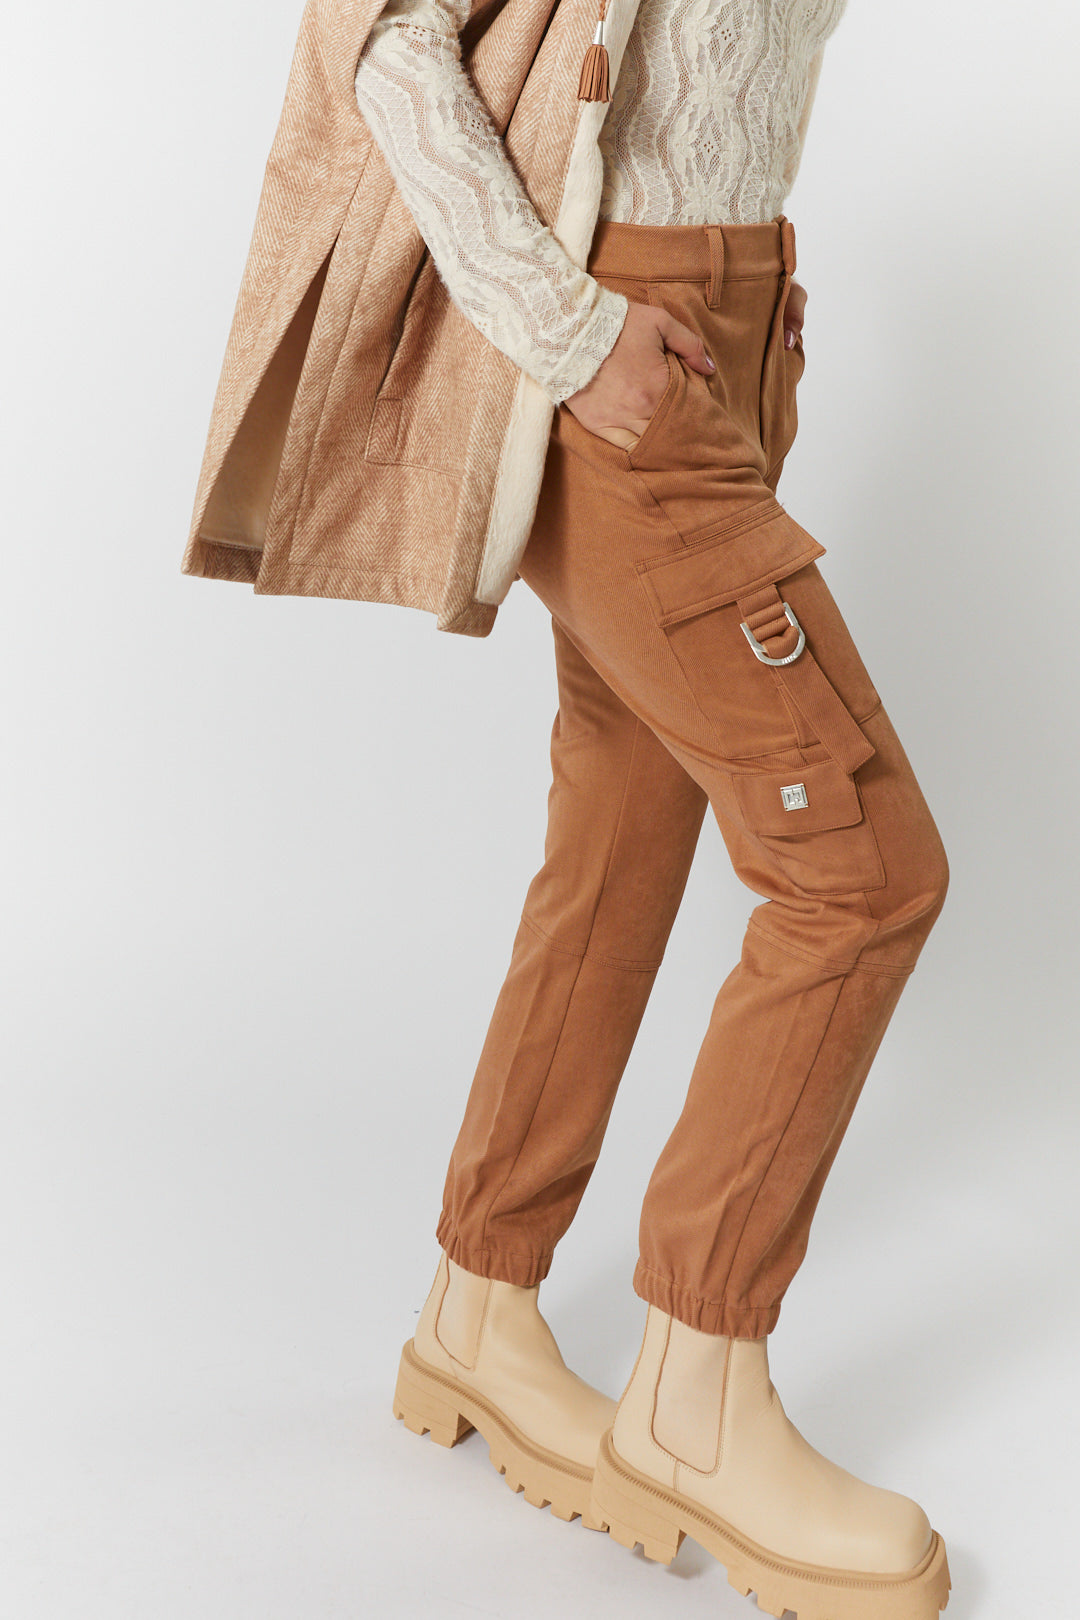 Textured tan pants | Daphne